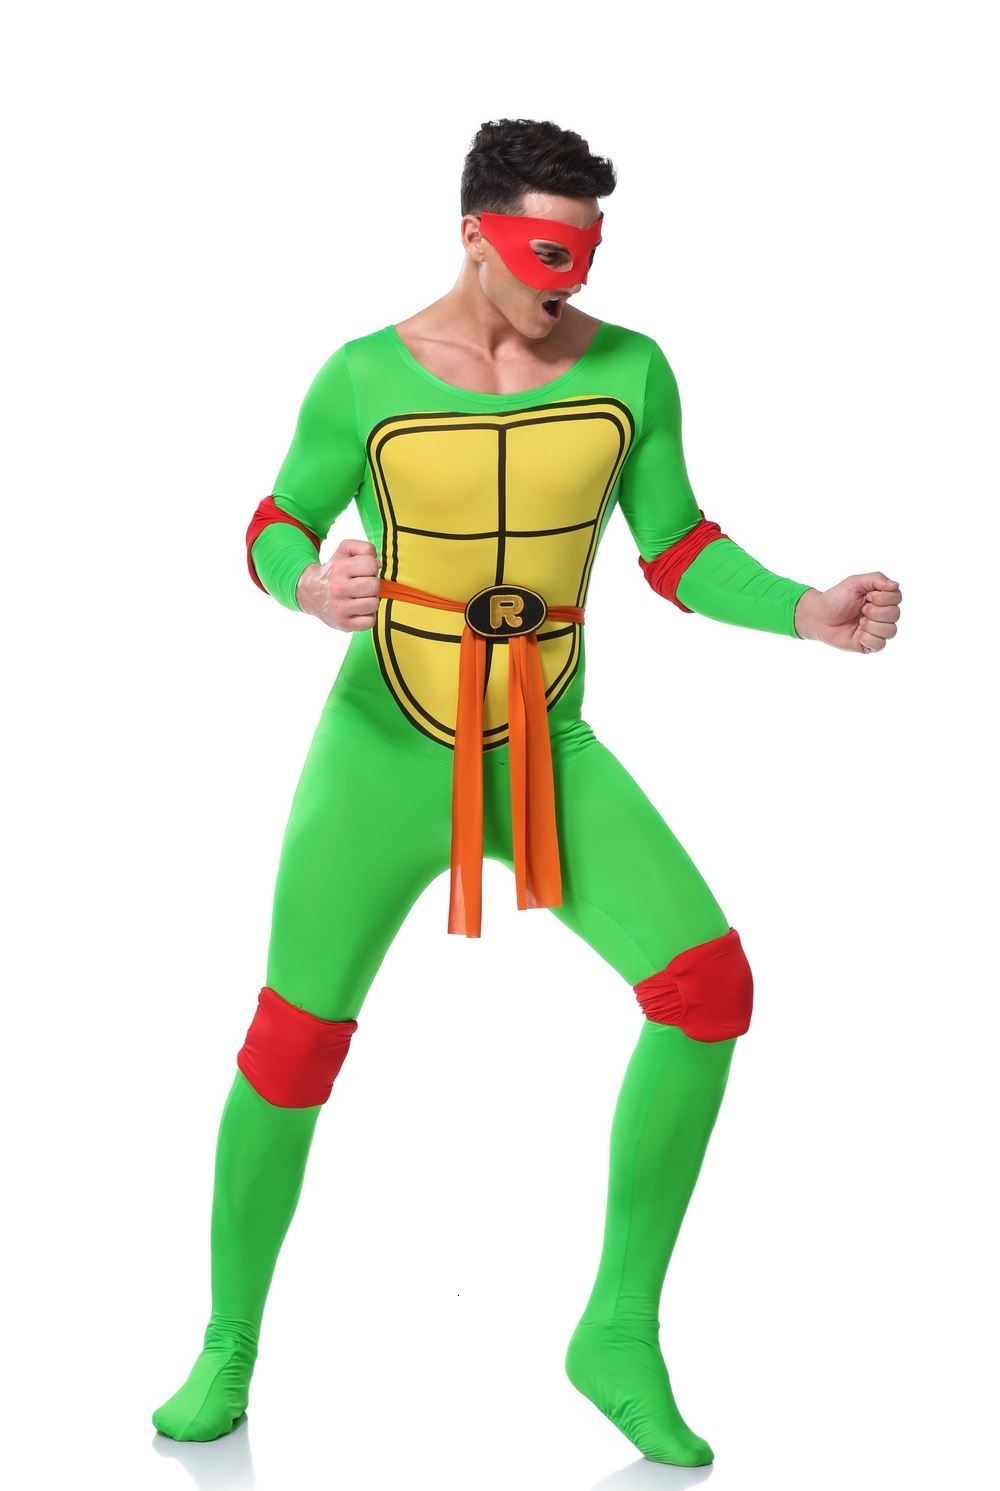 Купить детский костюм Черепашки ниндзя для мальчика в интернет-магазине